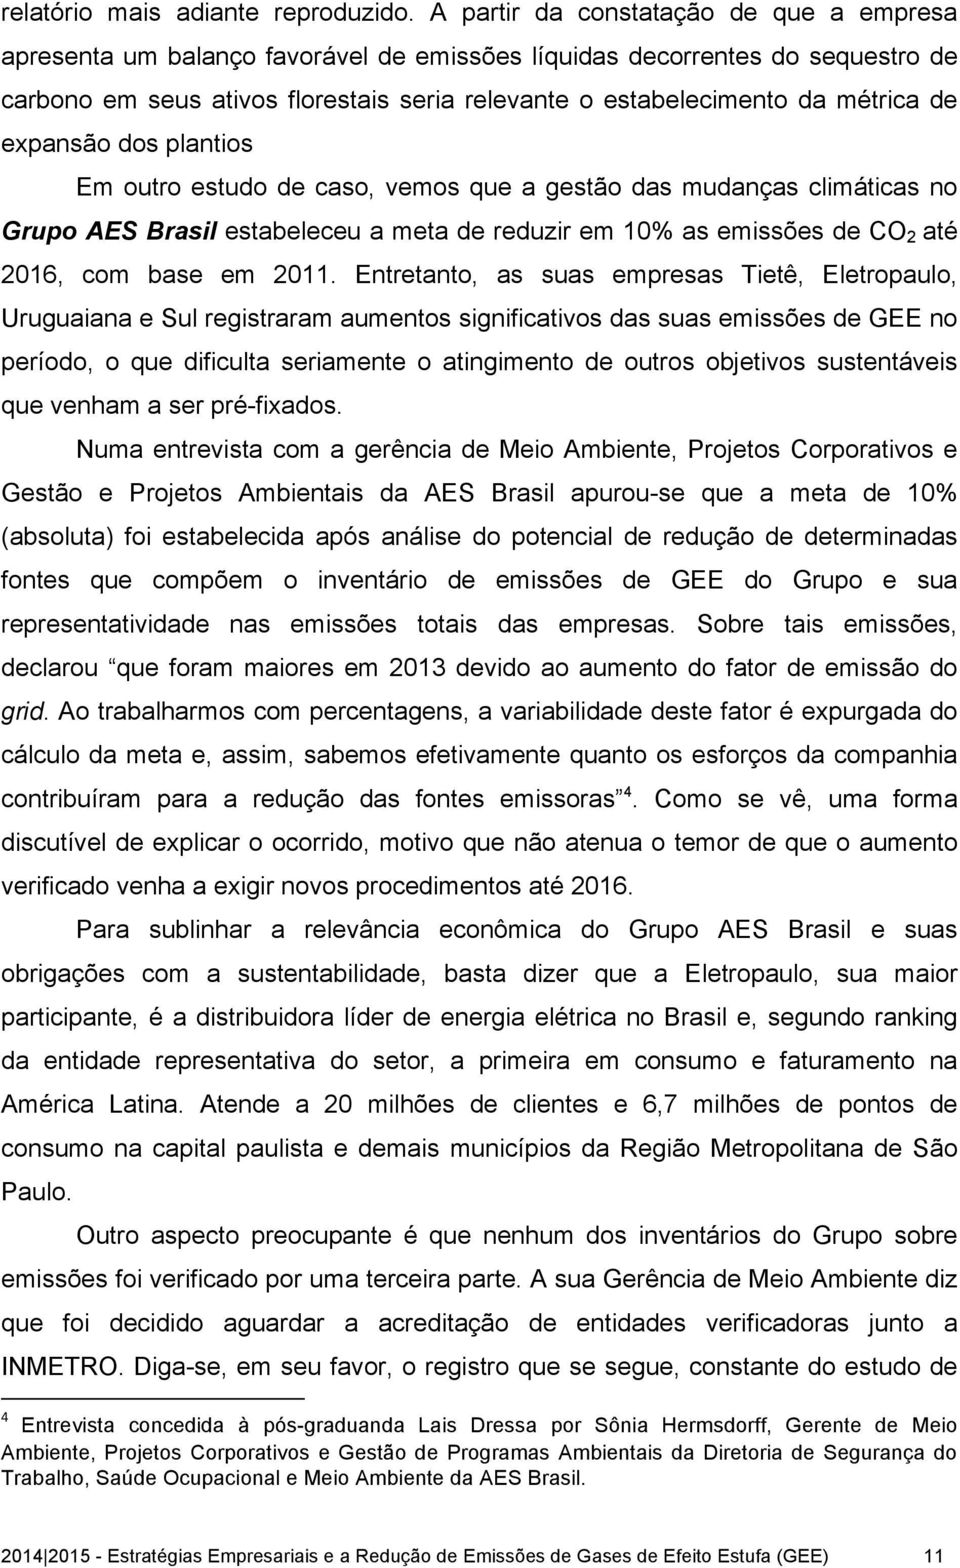 de expansão dos plantios Em outro estudo de caso, vemos que a gestão das mudanças climáticas no Grupo AES Brasil estabeleceu a meta de reduzir em 10% as emissões de CO 2 até 2016, com base em 2011.